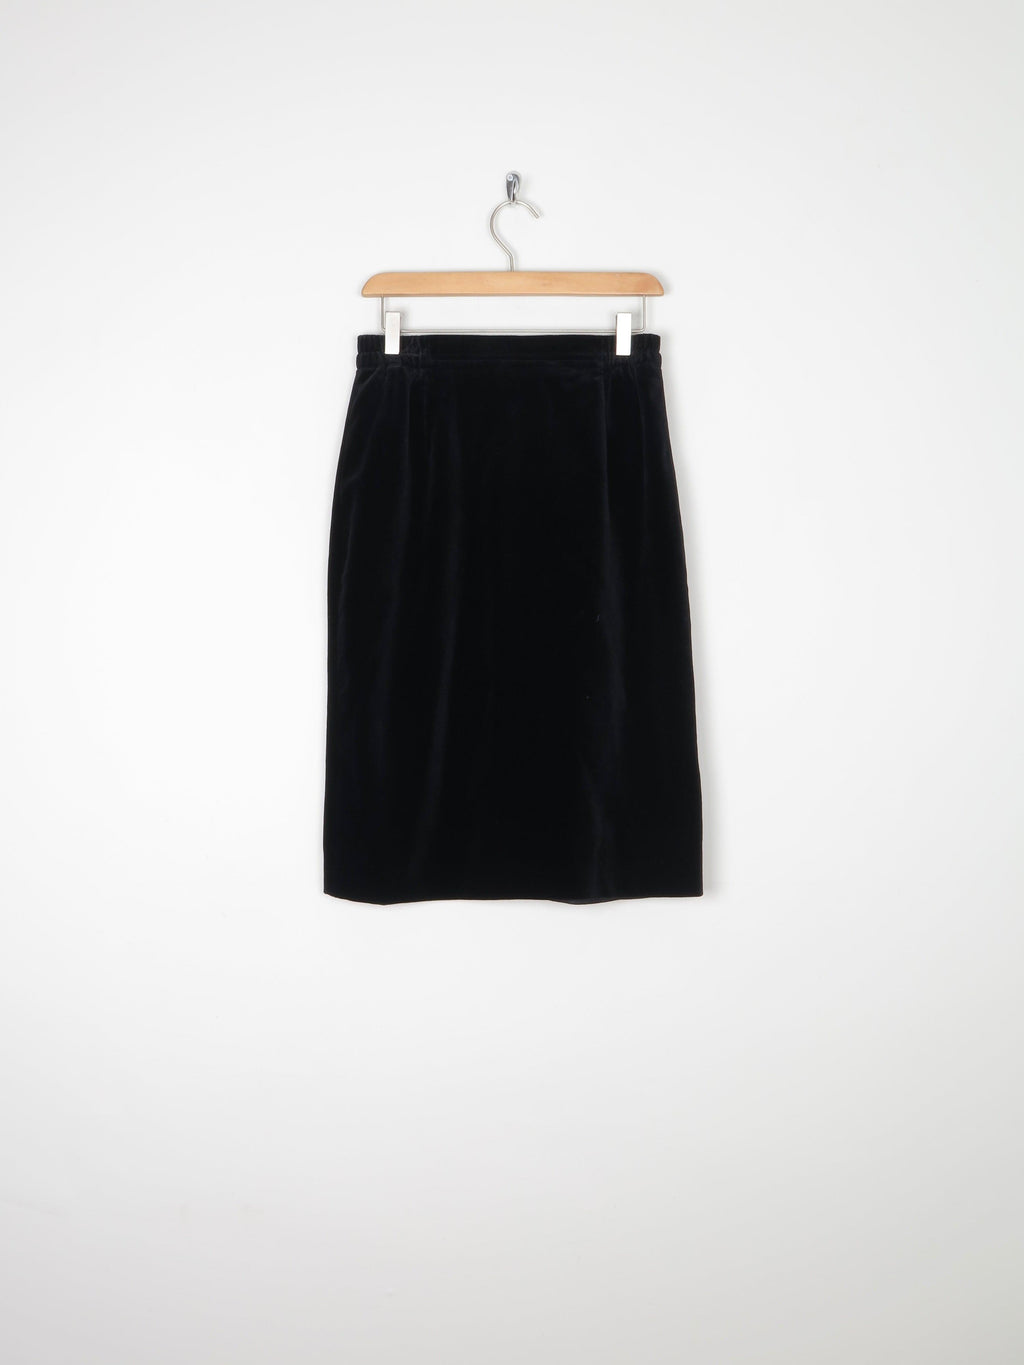 Black Velvet Pencil Vintage Skirt S - The Harlequin